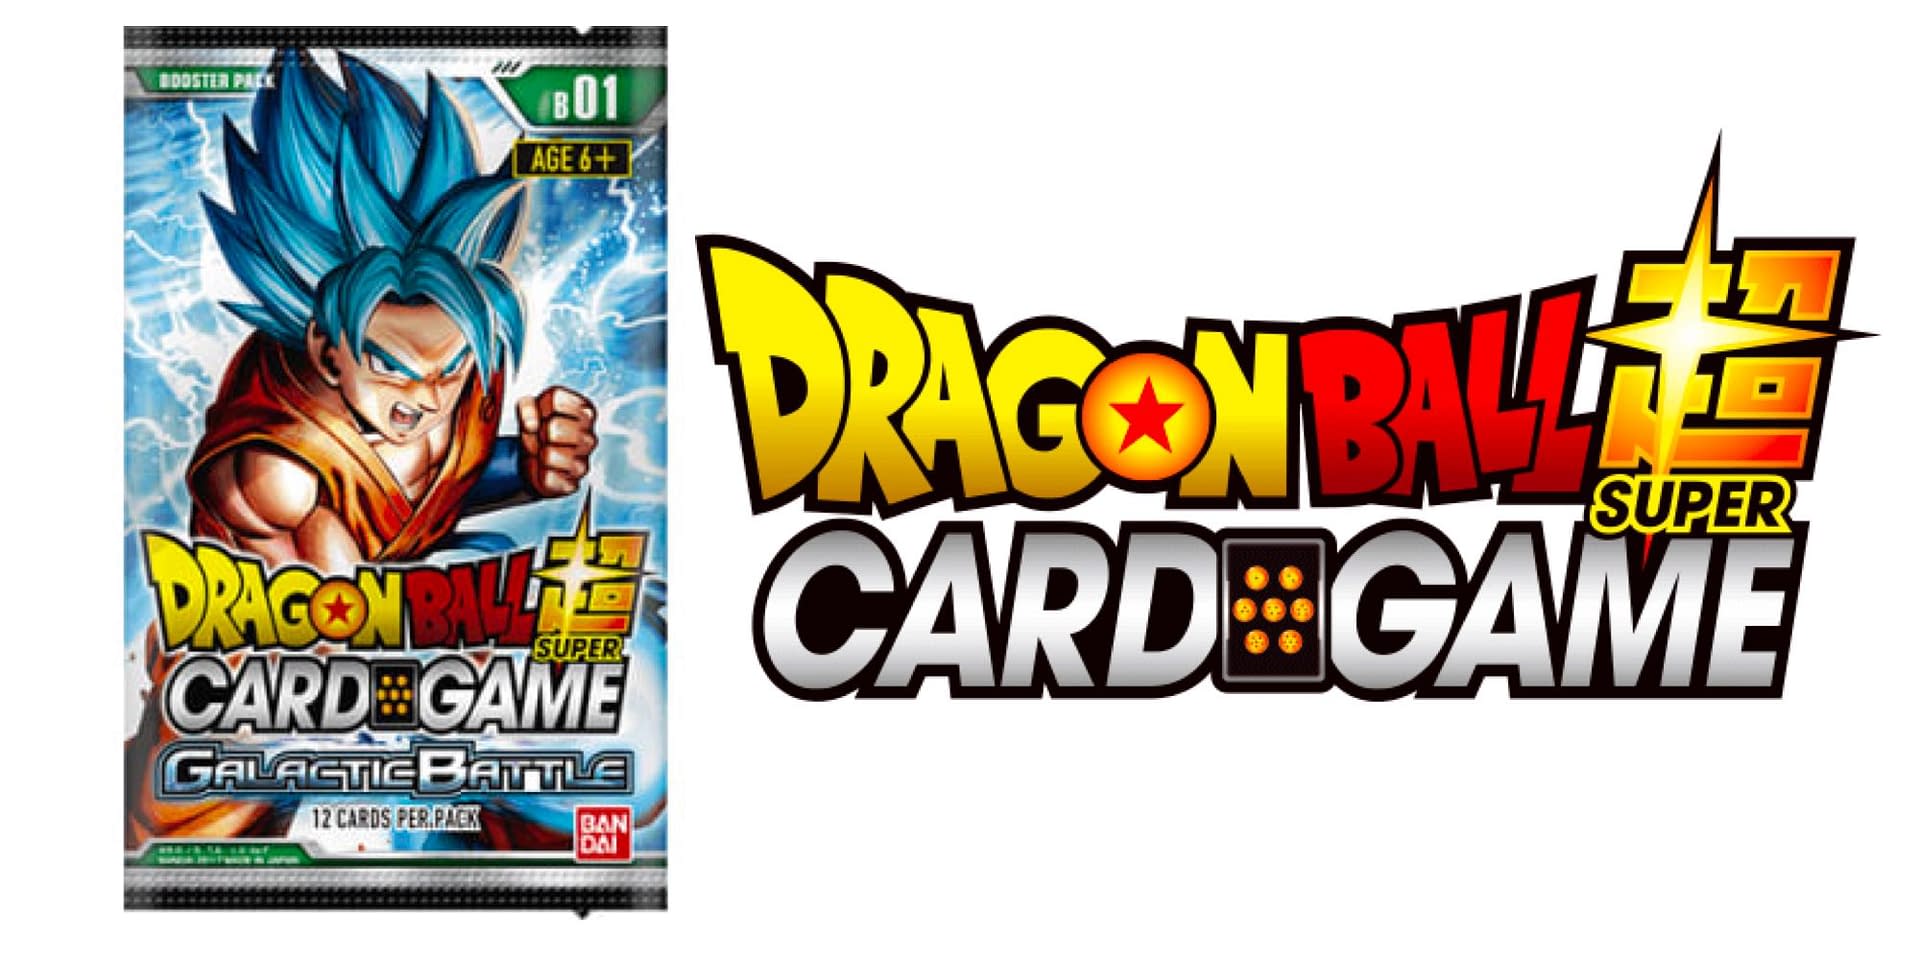 Bt1-032 cpu card galactic battle dragon ball super card game vf dbs dbz tcg 